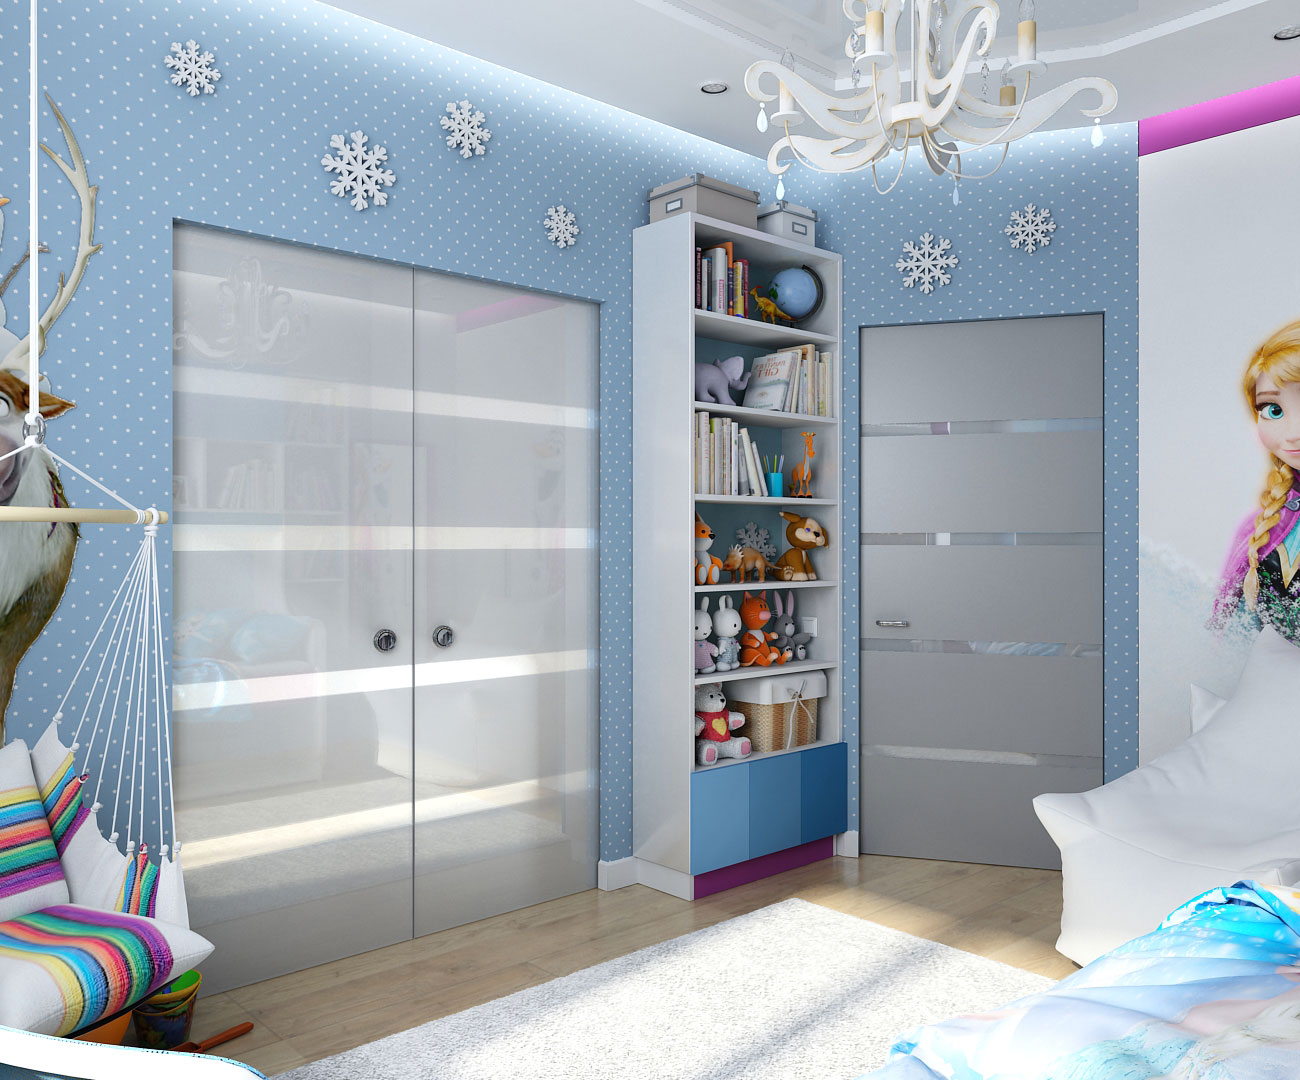 design de interiores no estilo das crianças de "congelado" em Chernigov em 3d max vray 1.5 imagem